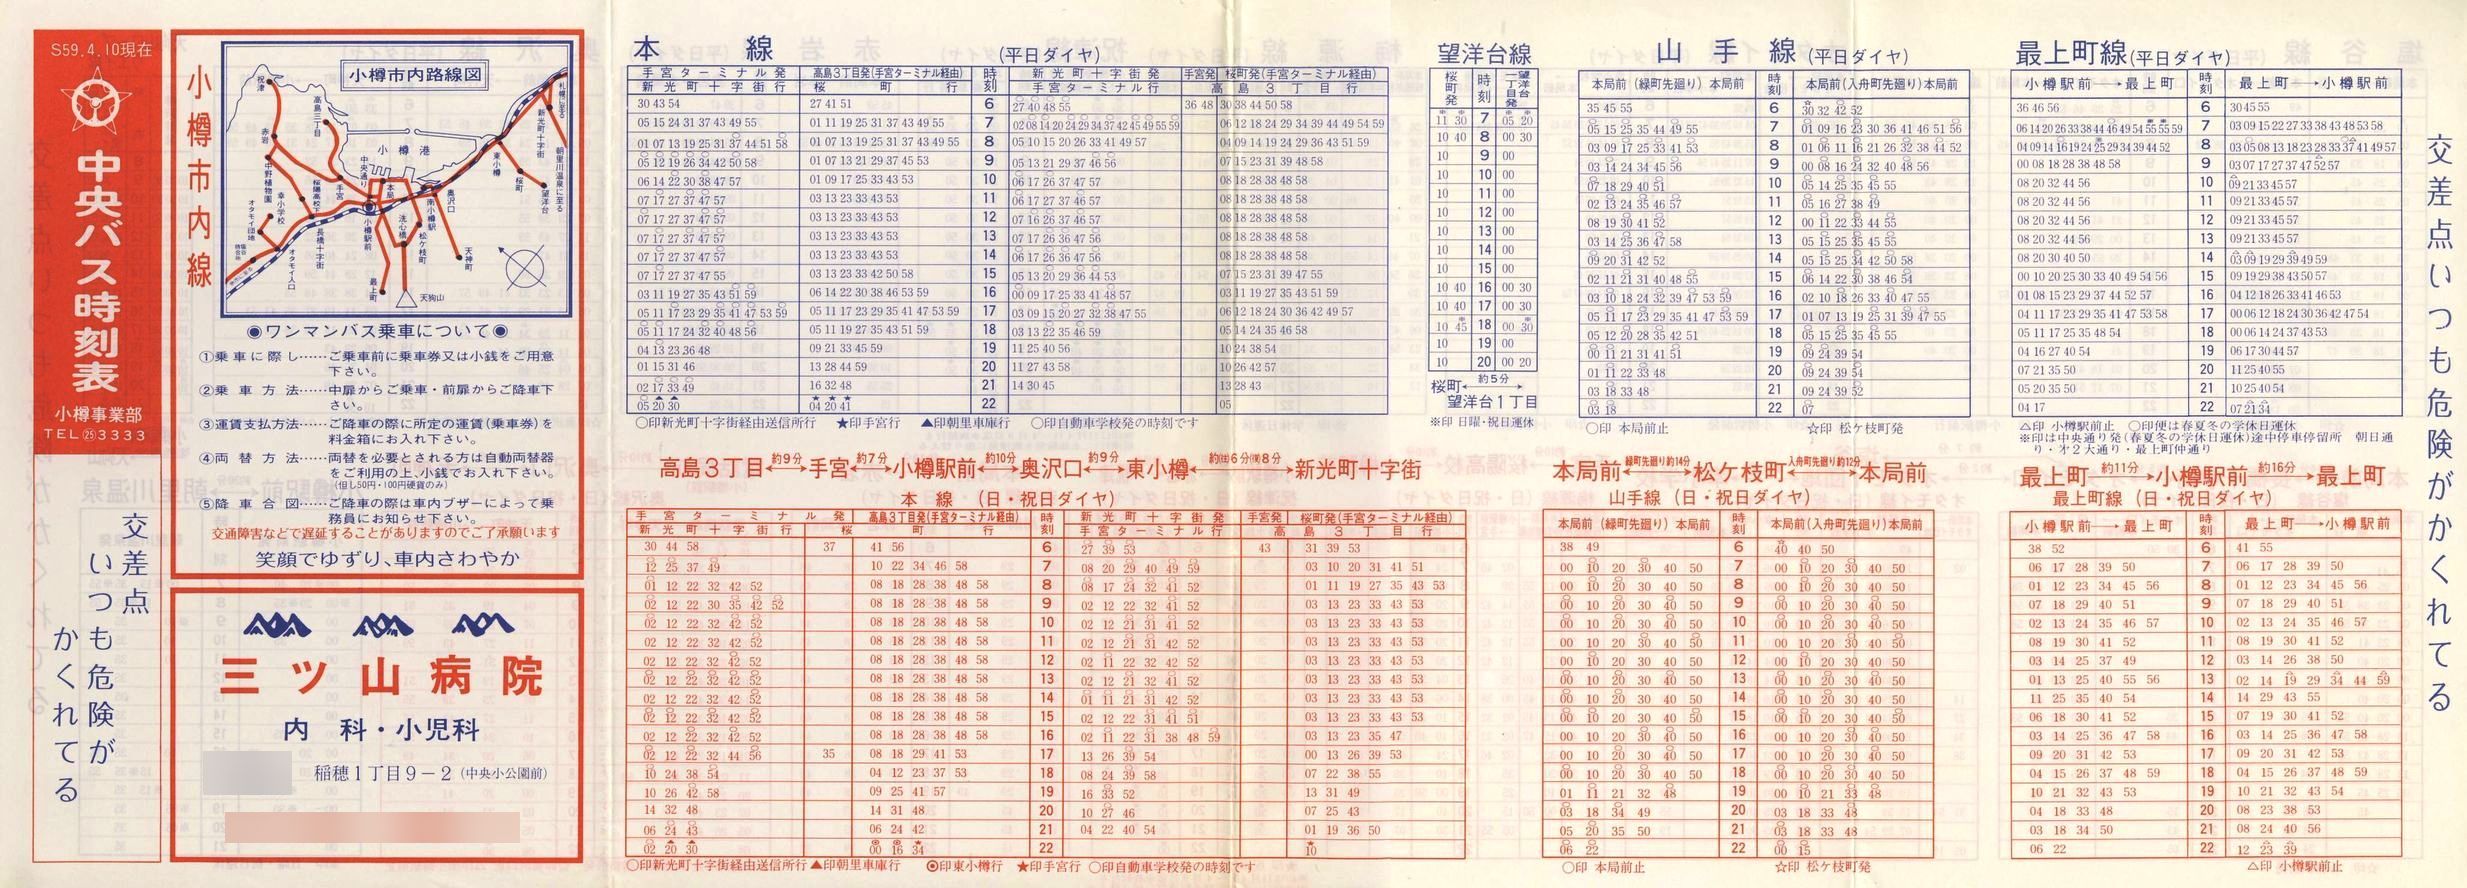 1984-04-10改正_北海道中央バス(小樽)_小樽市内線時刻表表面